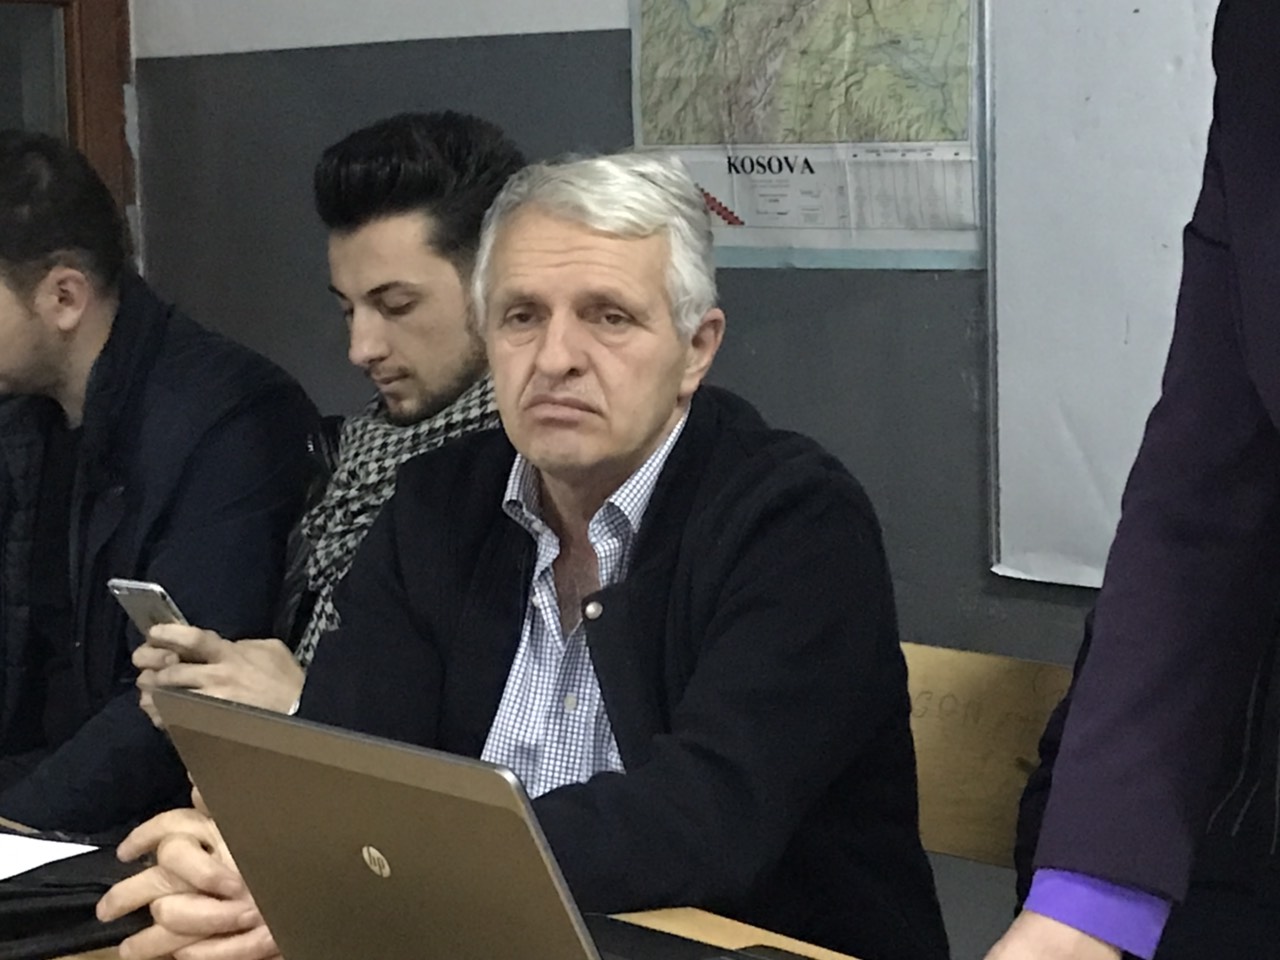 Avni Bikliqi rizgjedhet kryetar i nëndegës së PDK-së në Janjevë